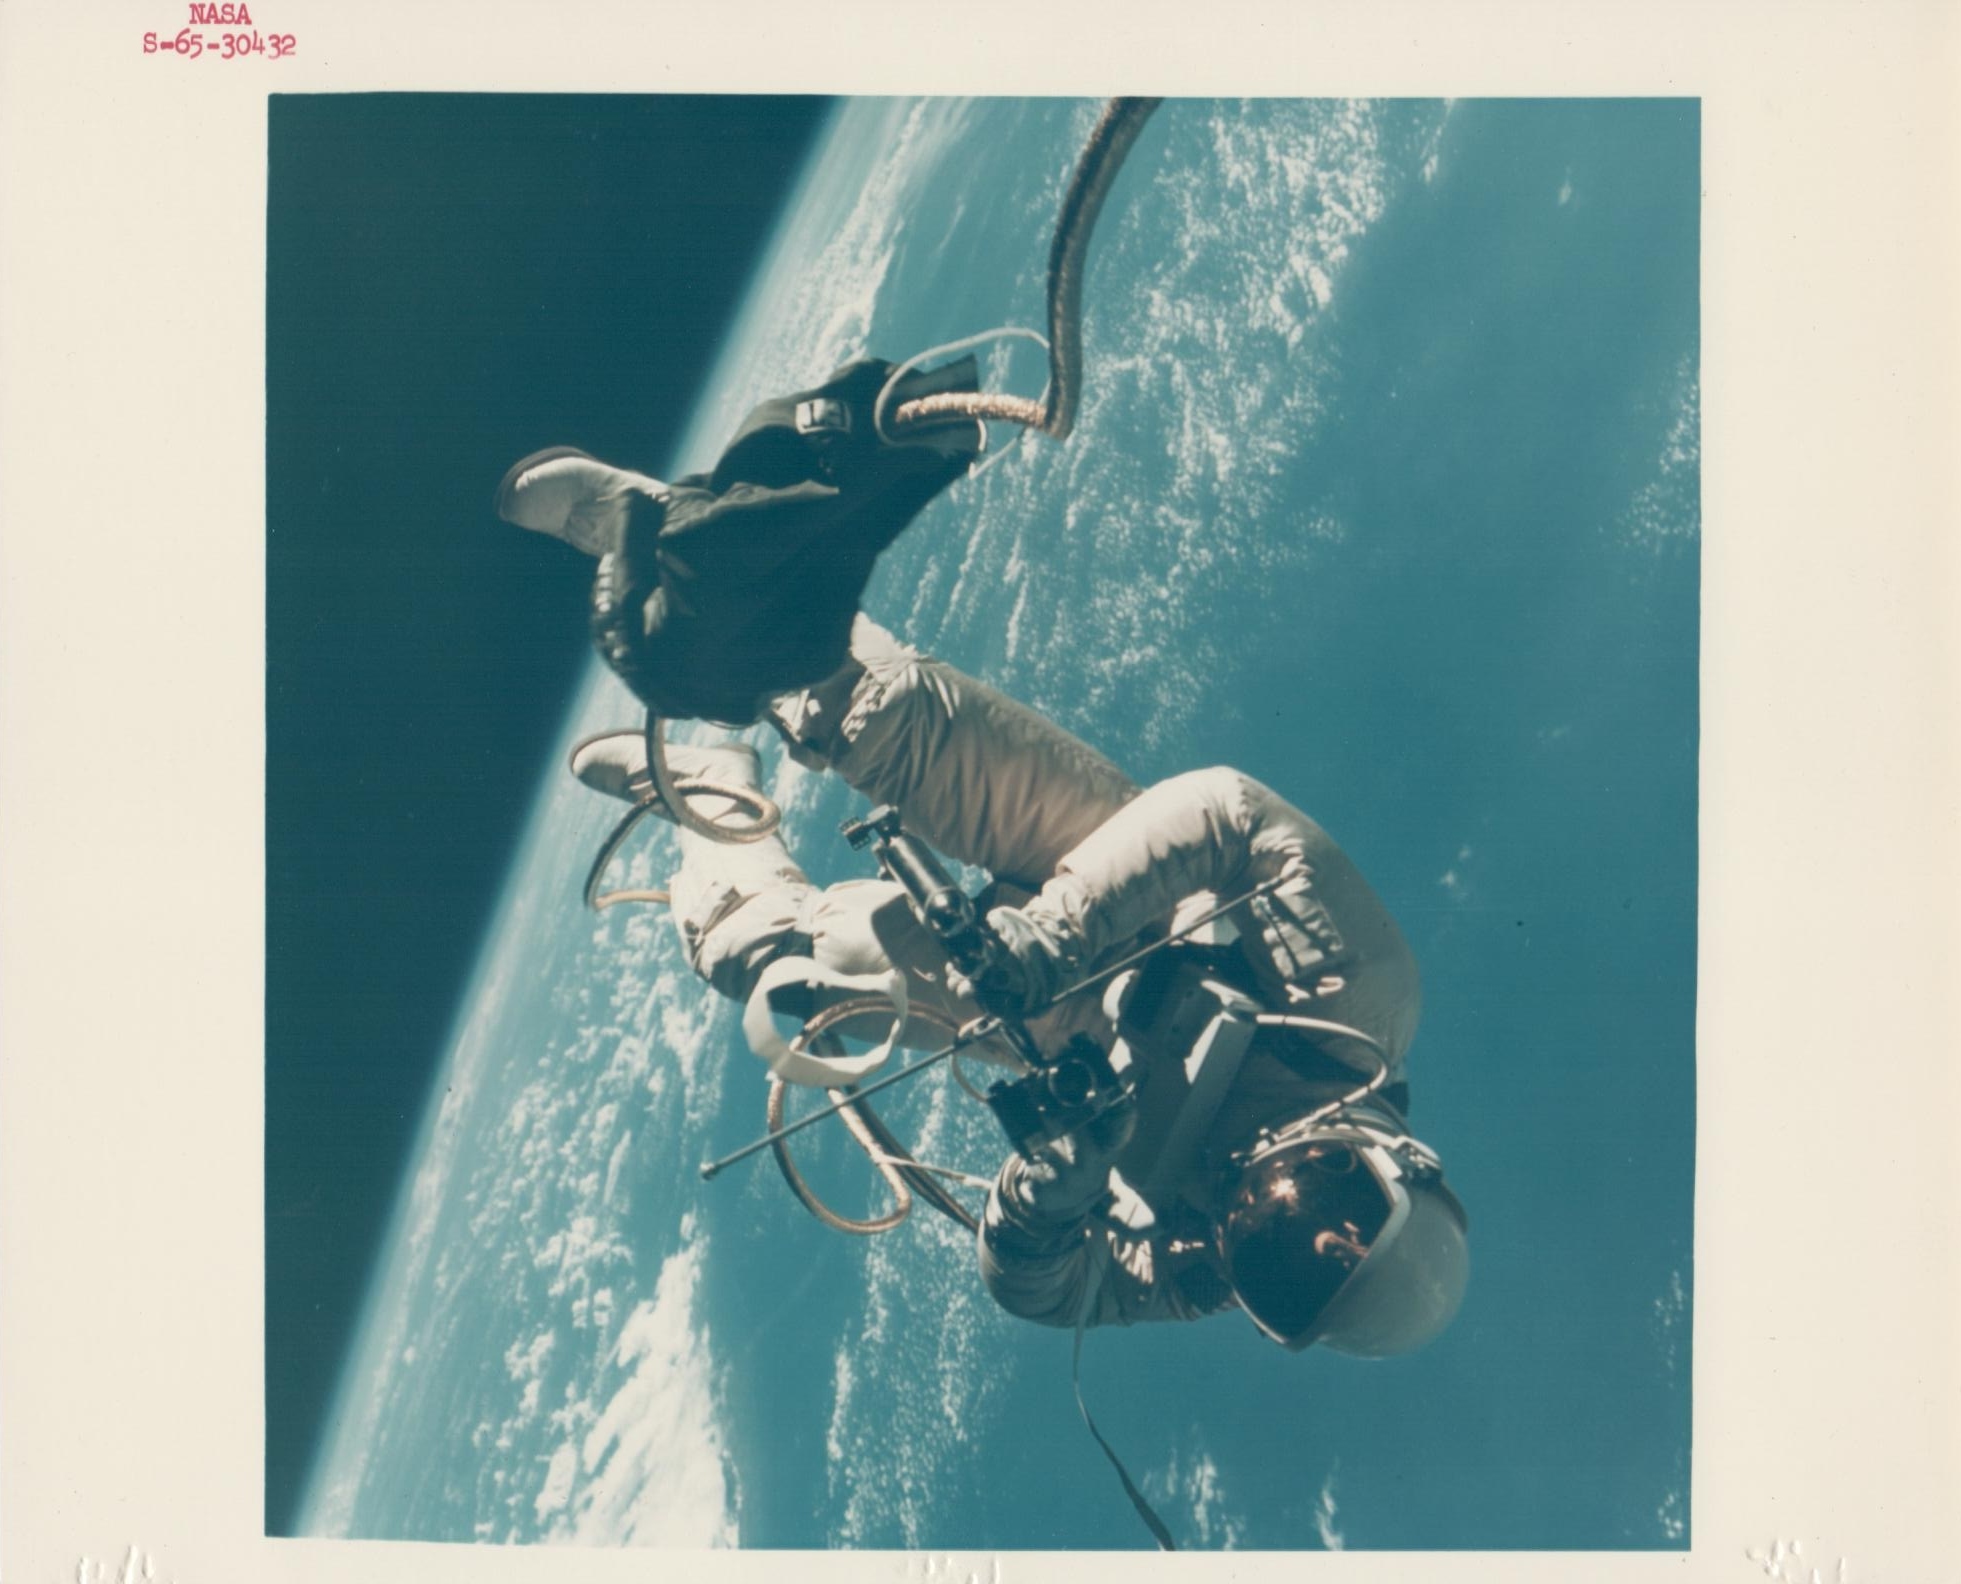 James McDivitt, Ed White walking in space, Gemini 4, June 1965